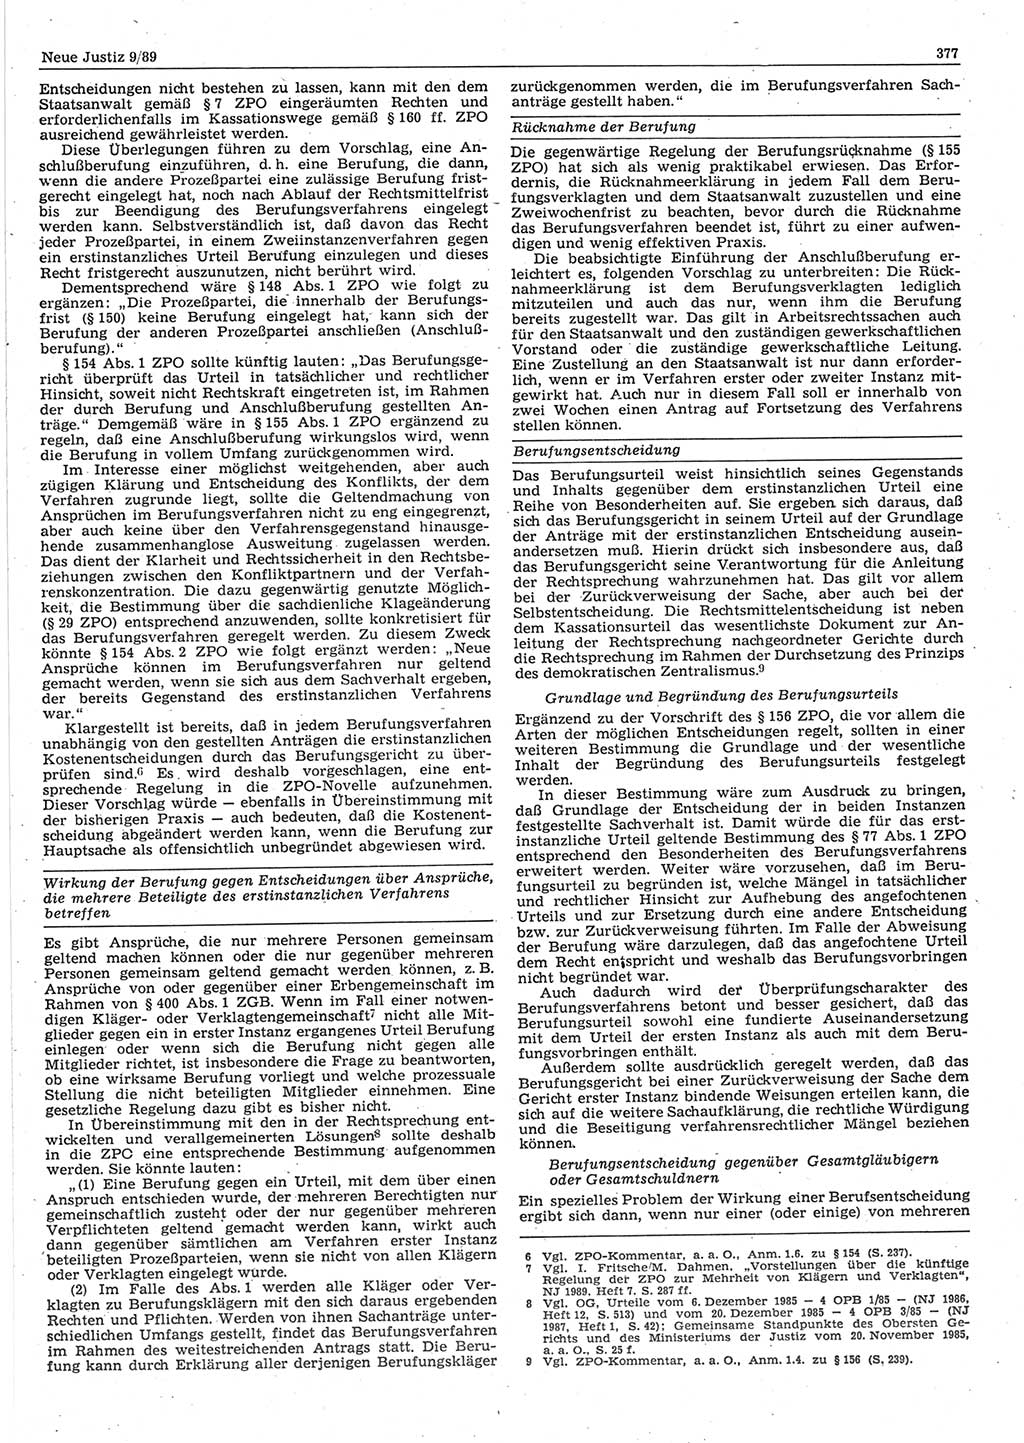 Neue Justiz (NJ), Zeitschrift für sozialistisches Recht und Gesetzlichkeit [Deutsche Demokratische Republik (DDR)], 43. Jahrgang 1989, Seite 377 (NJ DDR 1989, S. 377)